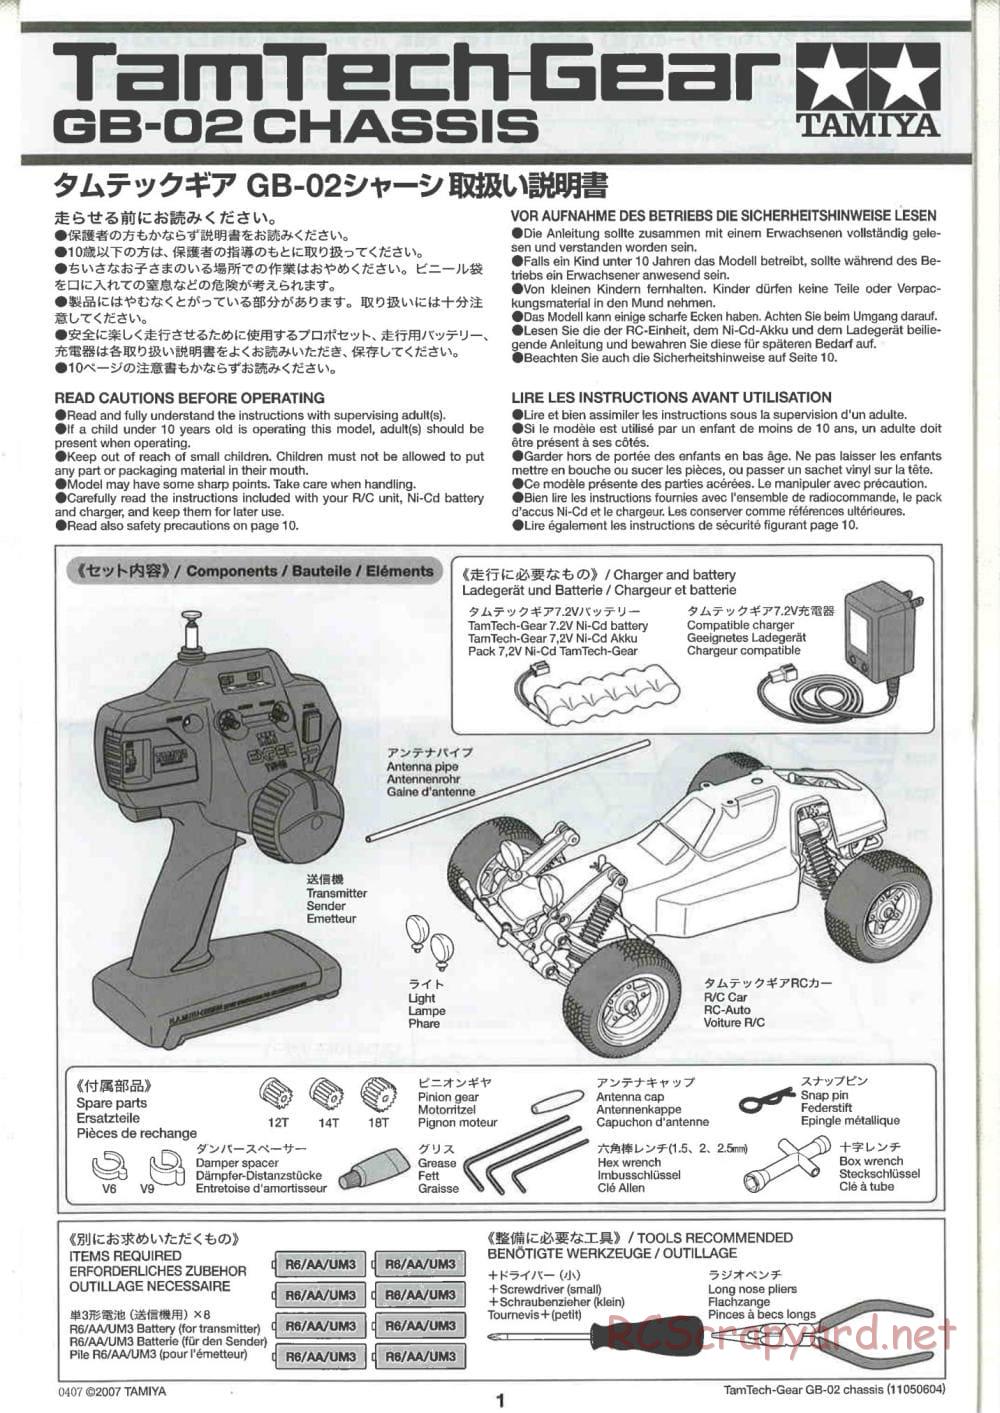 Tamiya - GB-02 Chassis - Manual - Page 1